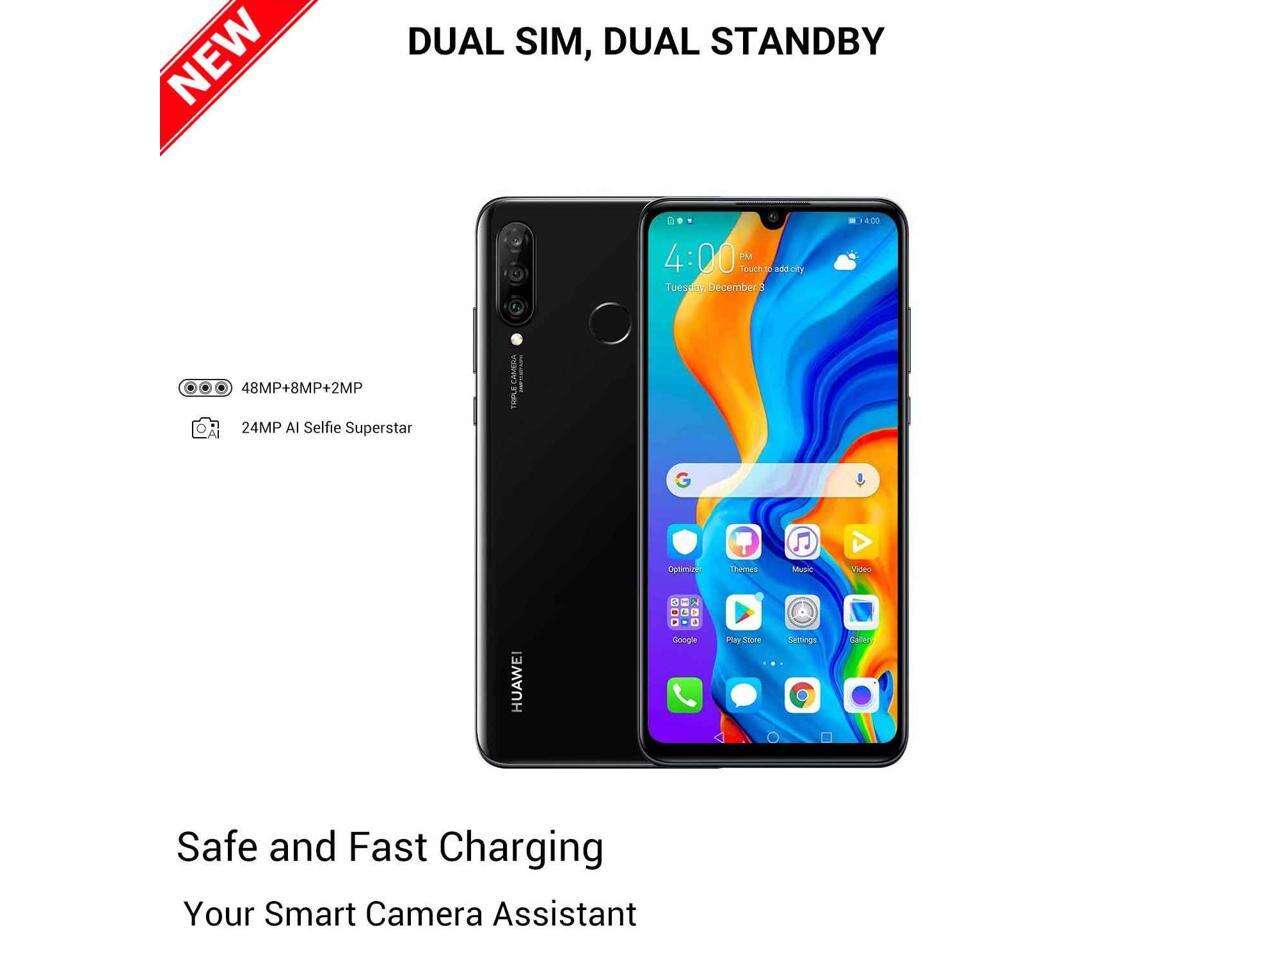 Huawei P30 Lite 128GB MAR-LX2 Dual SIM GSM Factory Unlocked 4G LTE 6.15